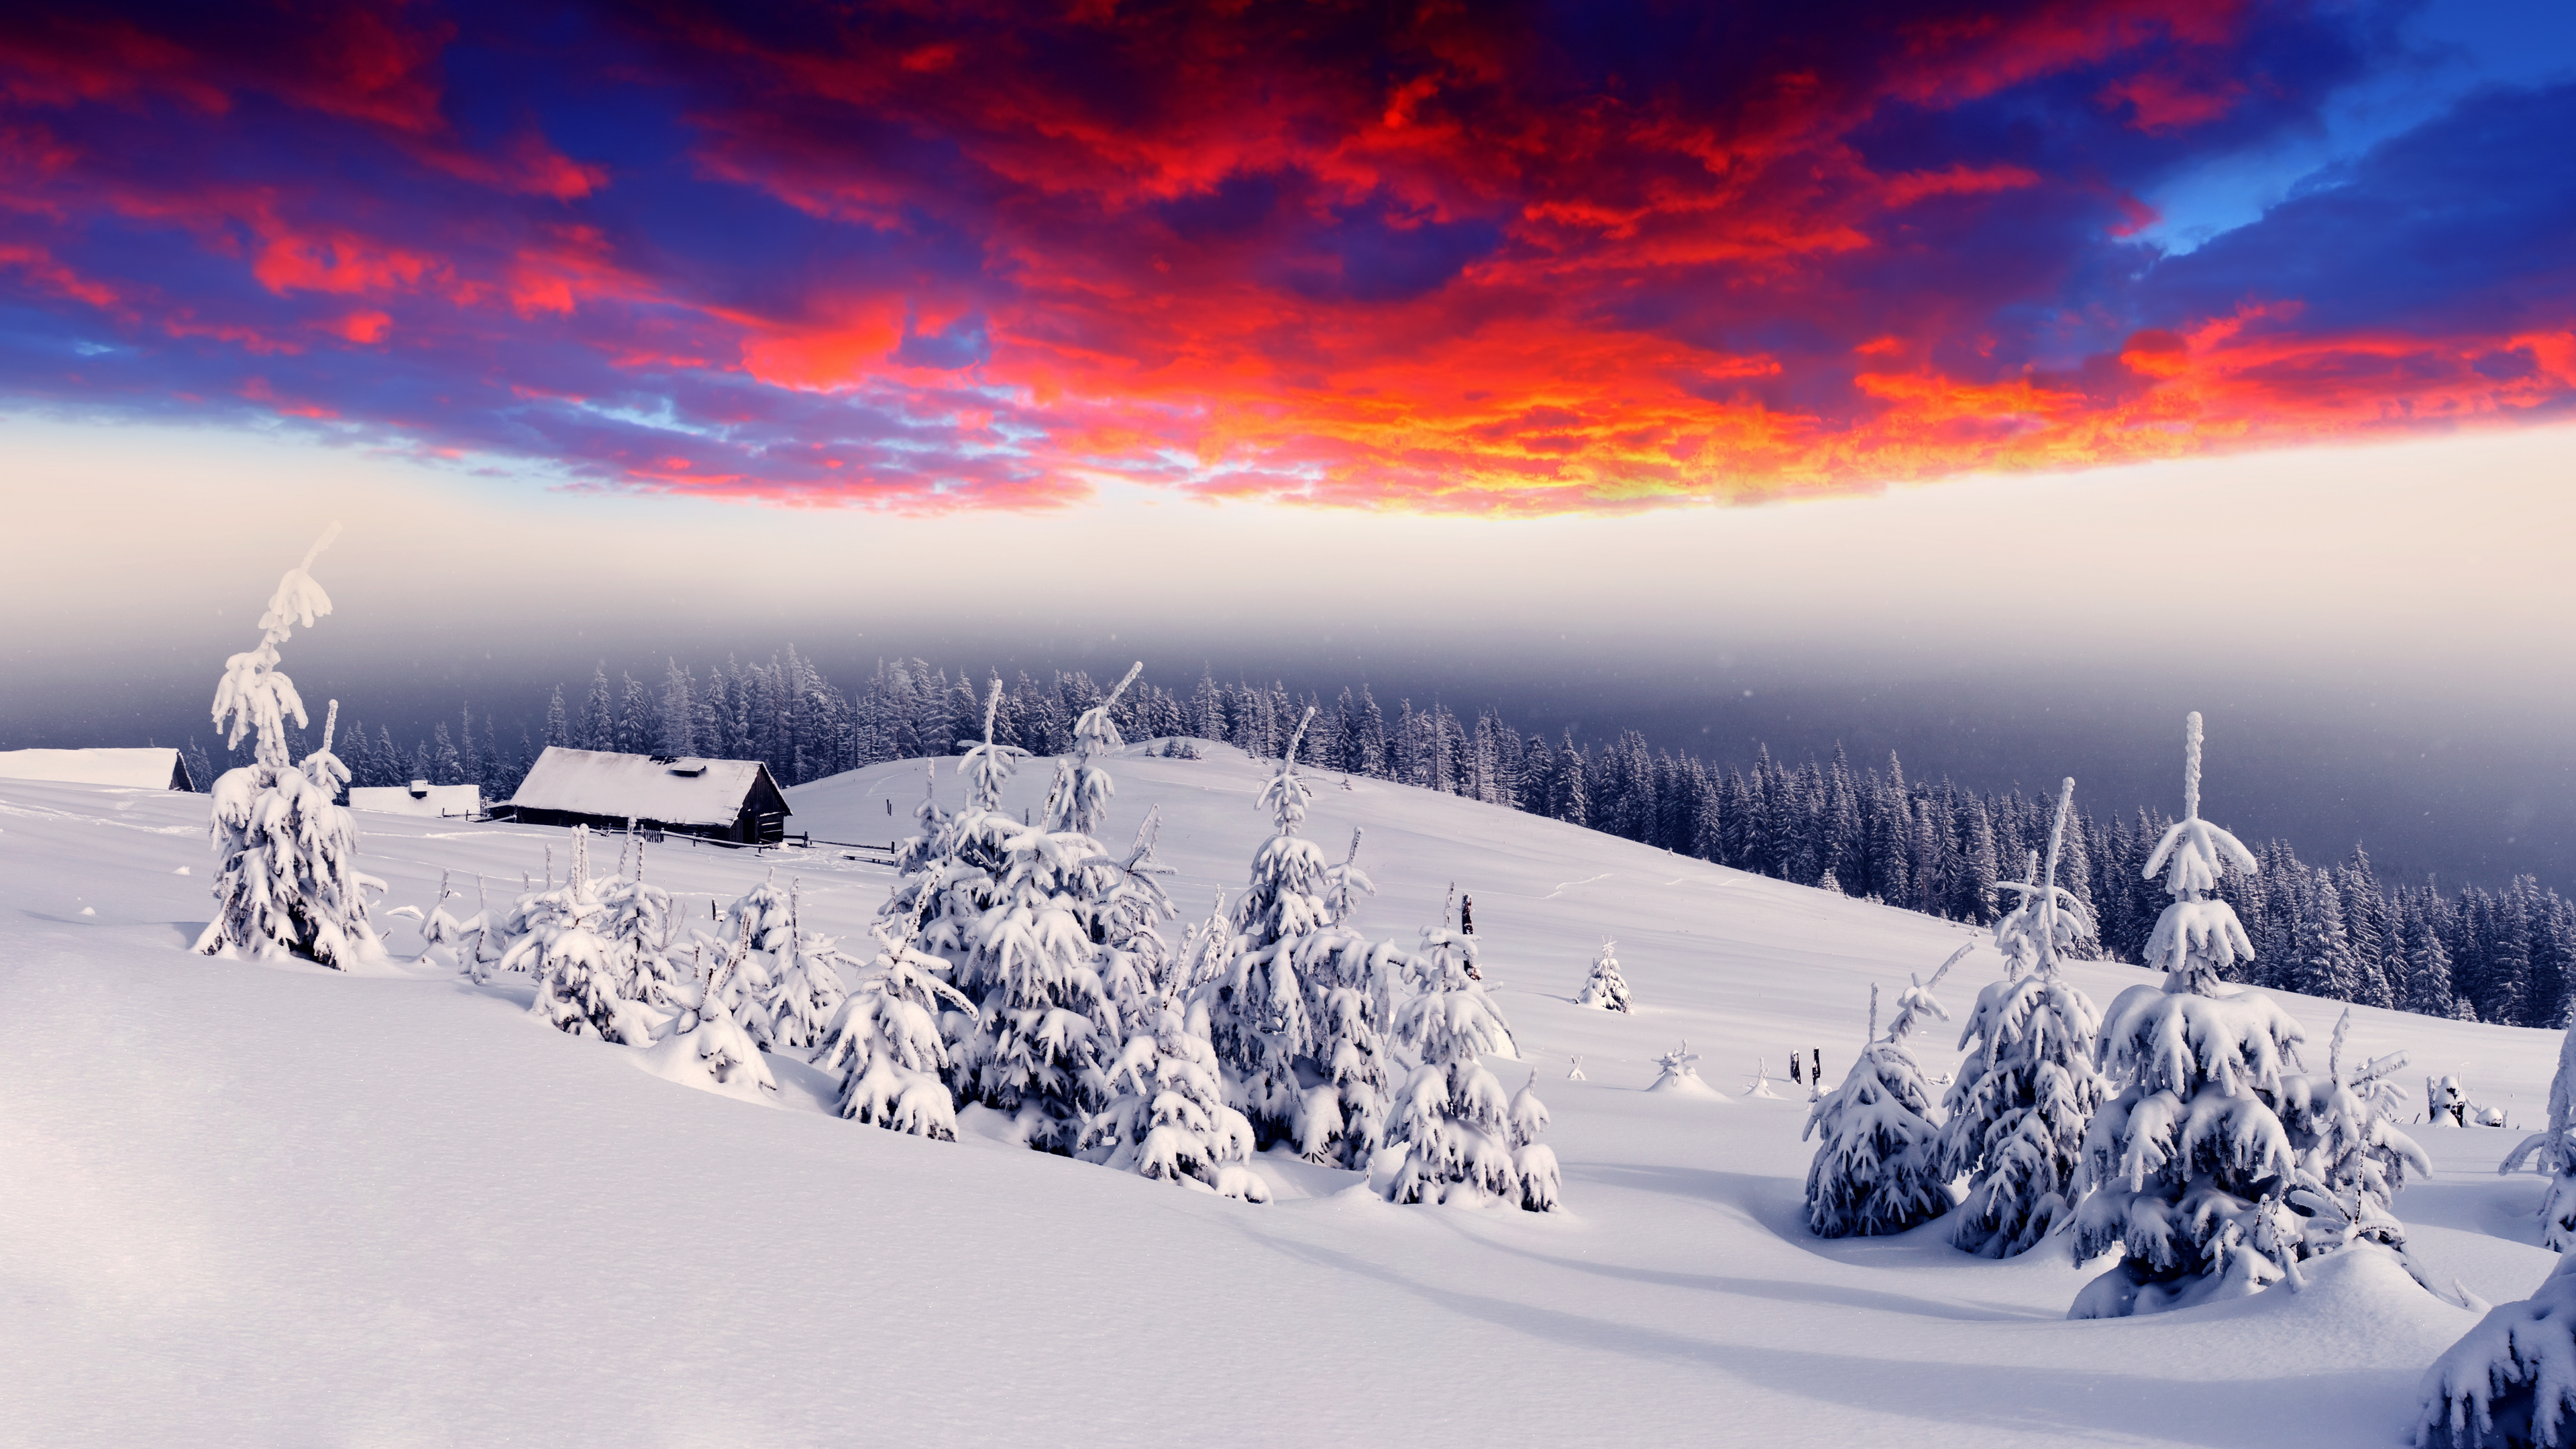 Campo Cubierto de Nieve Durante la Puesta de Sol. Wallpaper in 3840x2160 Resolution